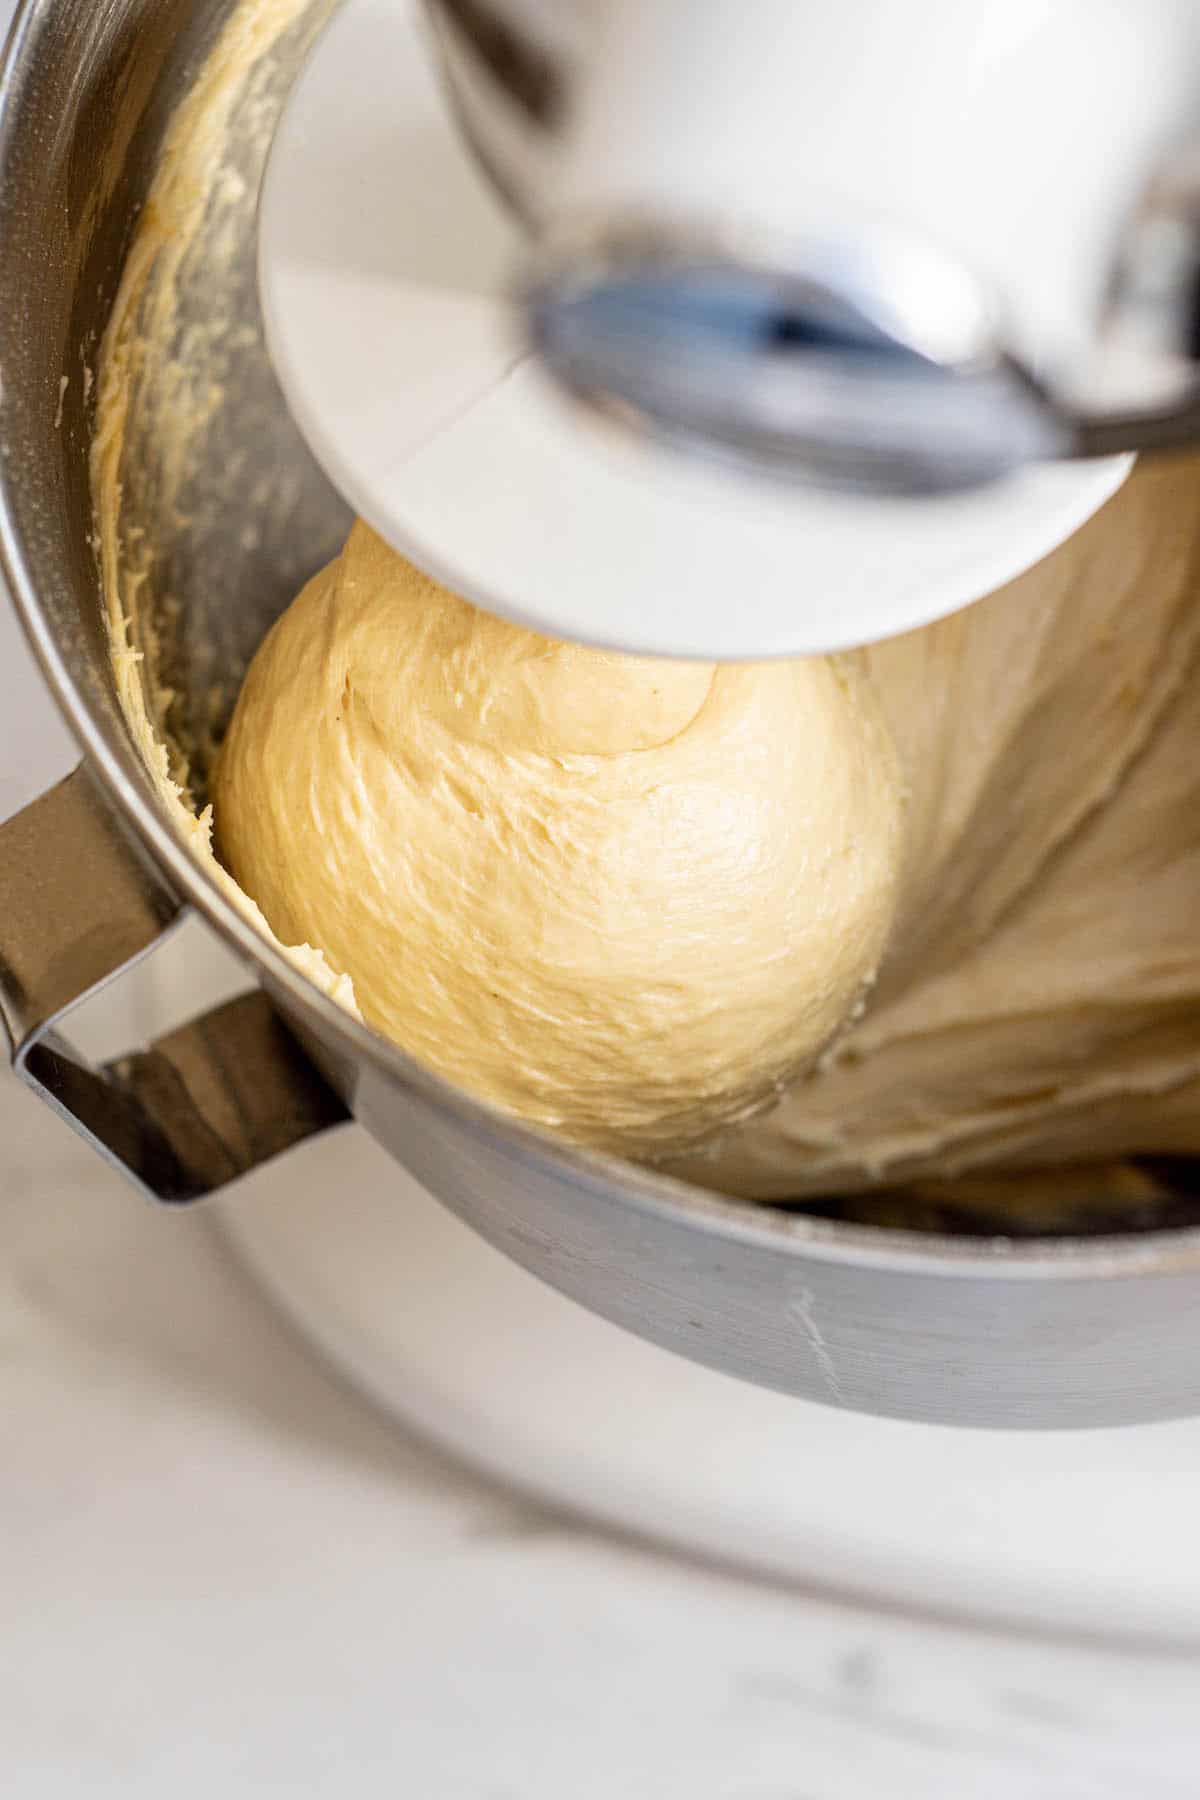 dough in a mixer.